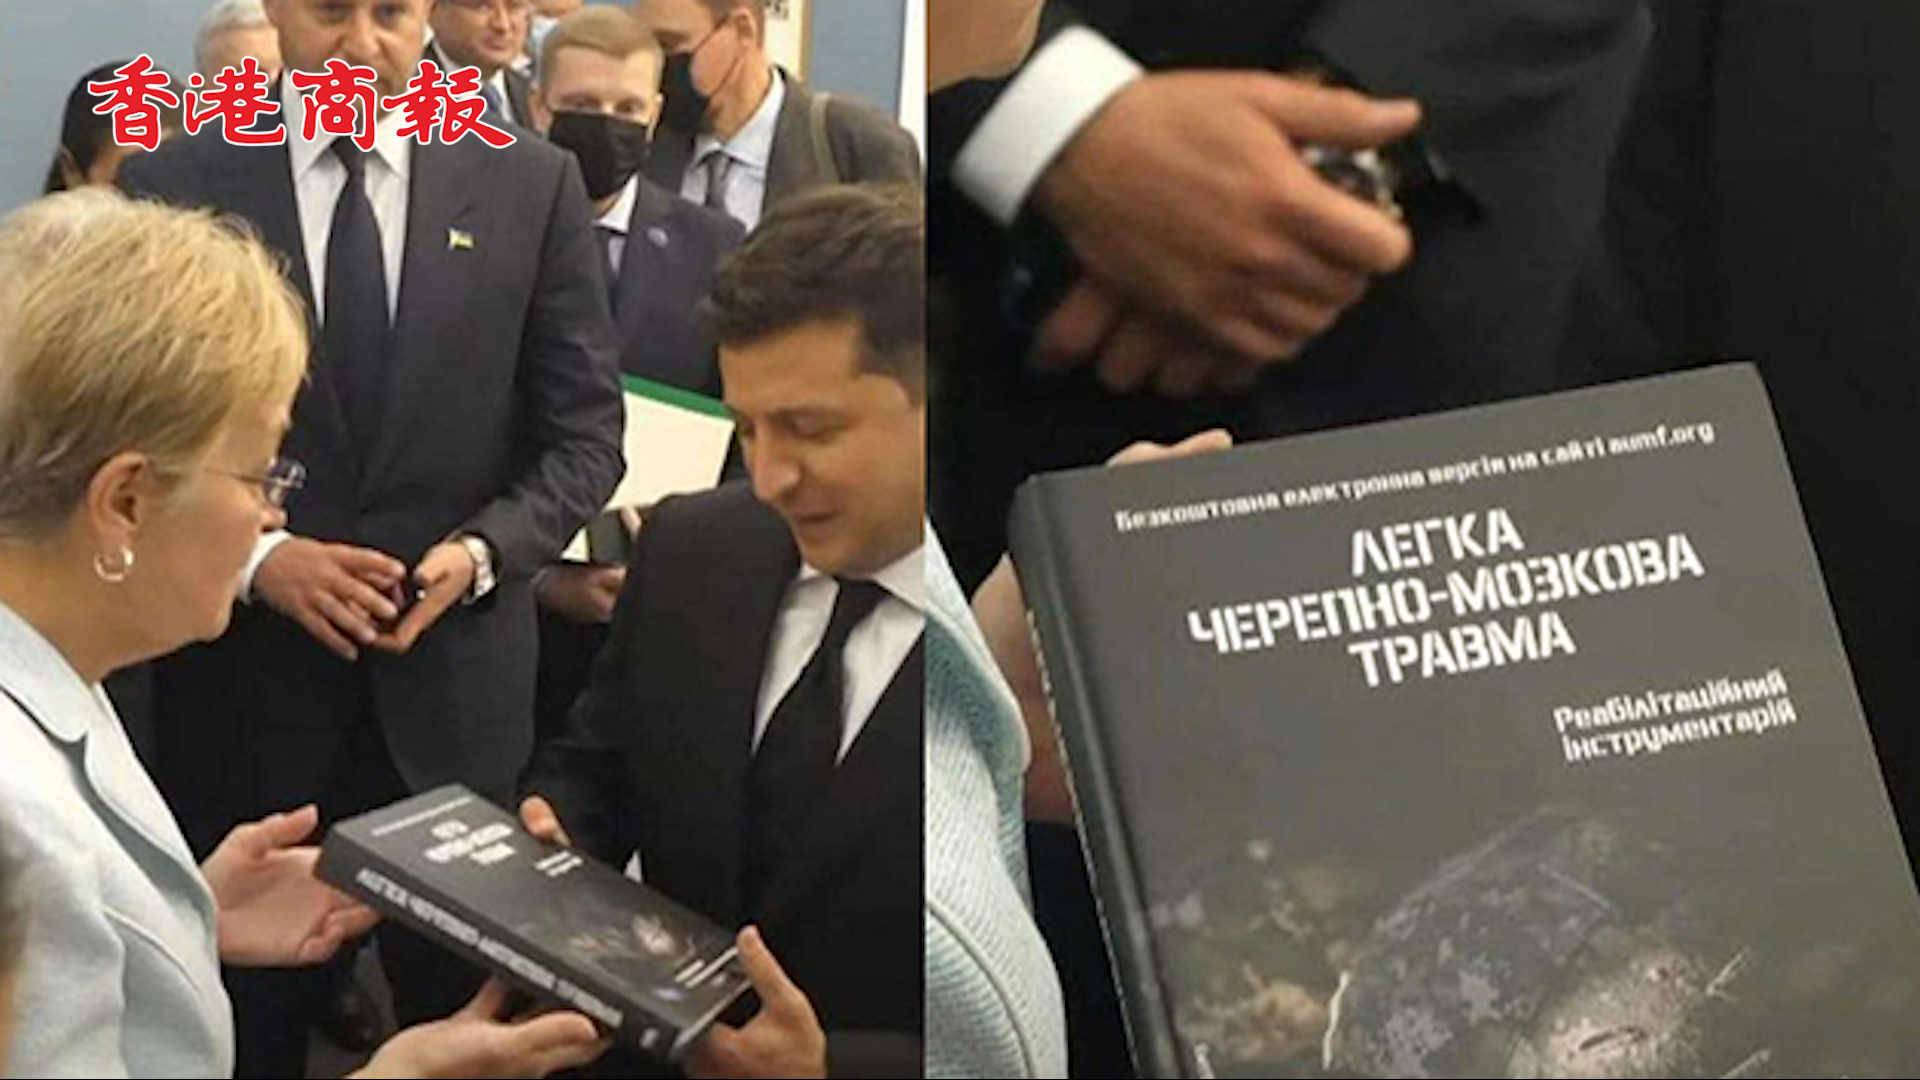 有片丨烏總統訪美獲贈書籍《輕度顱腦損傷》 俄發言人回應微妙